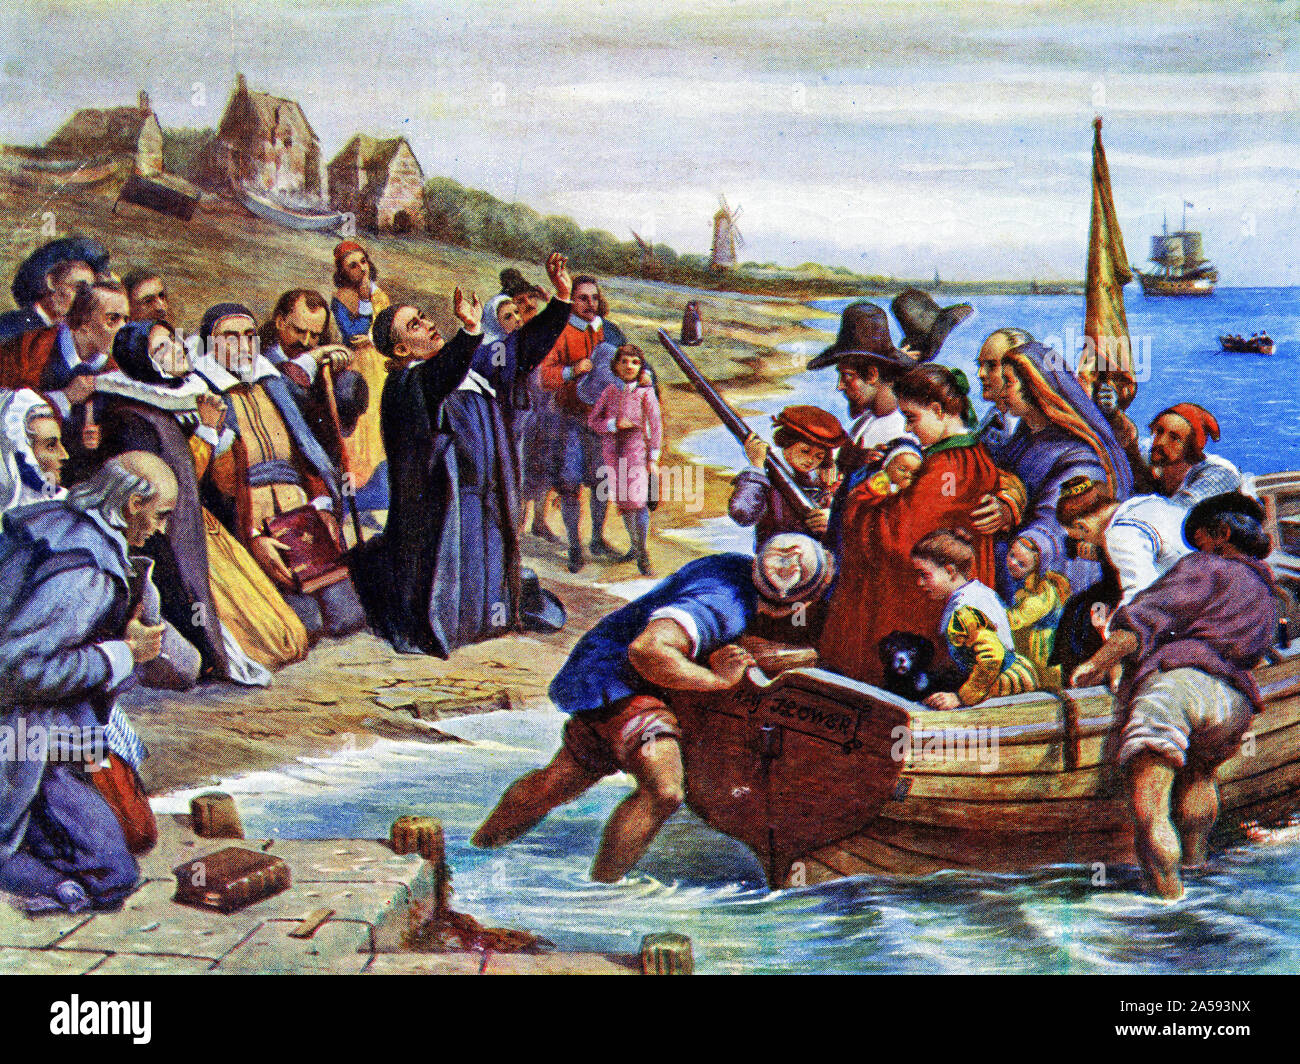 Farbige Raster der Pilgrim Fathers verlassen Delft Hafen für die Neue Welt. Stockfoto